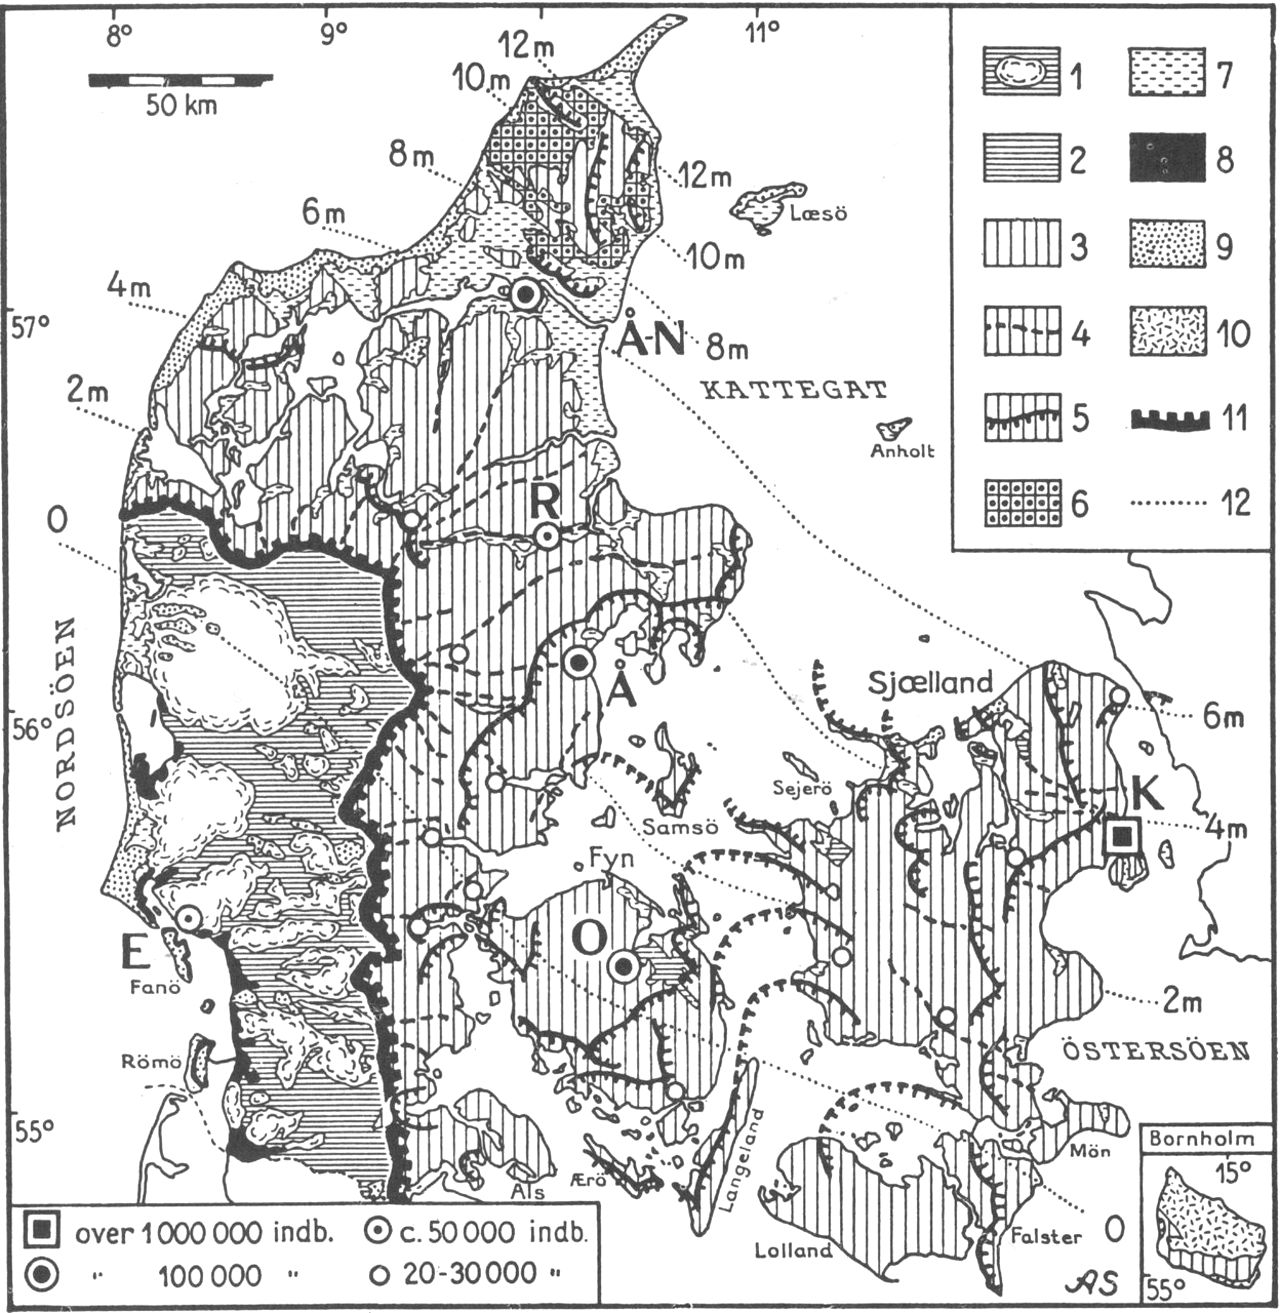 (Kort). Geomorfologisk kort over Jylland og Øerne.1. Bakkeø ɔ: gammelt morænelandskab fra næstsidste istid (Saale/Riss). Relieffet modent udjævnet ved arktisk jordflydning og normalerosion. 2. Hedeslette, opbygget af smeltevandsaflejringer i sidste istid (Weichsel/Würm). 3. Ungt morænelandskab fra sidste istid. Reliefrigt bakkeland, især i israndzonerne, vekslende med jævnt bølgede moræneflader, fx. på Lolland, Nordfyn og Stevns. 4. Tunneldale, dannet subglacialt ɔ: af smeltevandsstrømme under isen. Uregelmæssigt længdeprofil med langsøer og moselavninger. 5. Morfologisk betydningsfulde israndslinier. Israndslandskaber, stedvis med veludviklede glaciale serier af landskabsformer: inderlavning omgivet af endemorænebuer og med foranliggende hedesletter fx. i Ods herred, Kerteminde-egnen og i det sydlige Djursland. 6. Senglacialt plateau ɔ: Yoldia-havets hævede havbund. 7. Marint forland: strandvoldssletter, afspærringsforland og egentlig hævet havbund. 8. Marsk. 9. Klitlandskaber: kystklitter, vandreklitter og indsande. 10. Grundfjeldslandskabet på Nordbornholm med klippekyst og sprækkedale. 11. Hovedstilstandslinie for isen i sidste istid, Danmarks mest udprægede natur- og kulturgeografiske grænselinie. 12. Isobaser for landhævningen i NØ.-D. efter Litorina- (el. Tapes-) sænkningens maksimum.Å. Århus, Å-N. Ålborg-Nørresundby, E. Esbjerg, K. København, O. Odense. R. Randers.Kompileret af Axel Schou på grundlag af Geodætisk Instituts Landskabskort over Danmark og Danmarks Geologiske Undersøgelses publikationer.